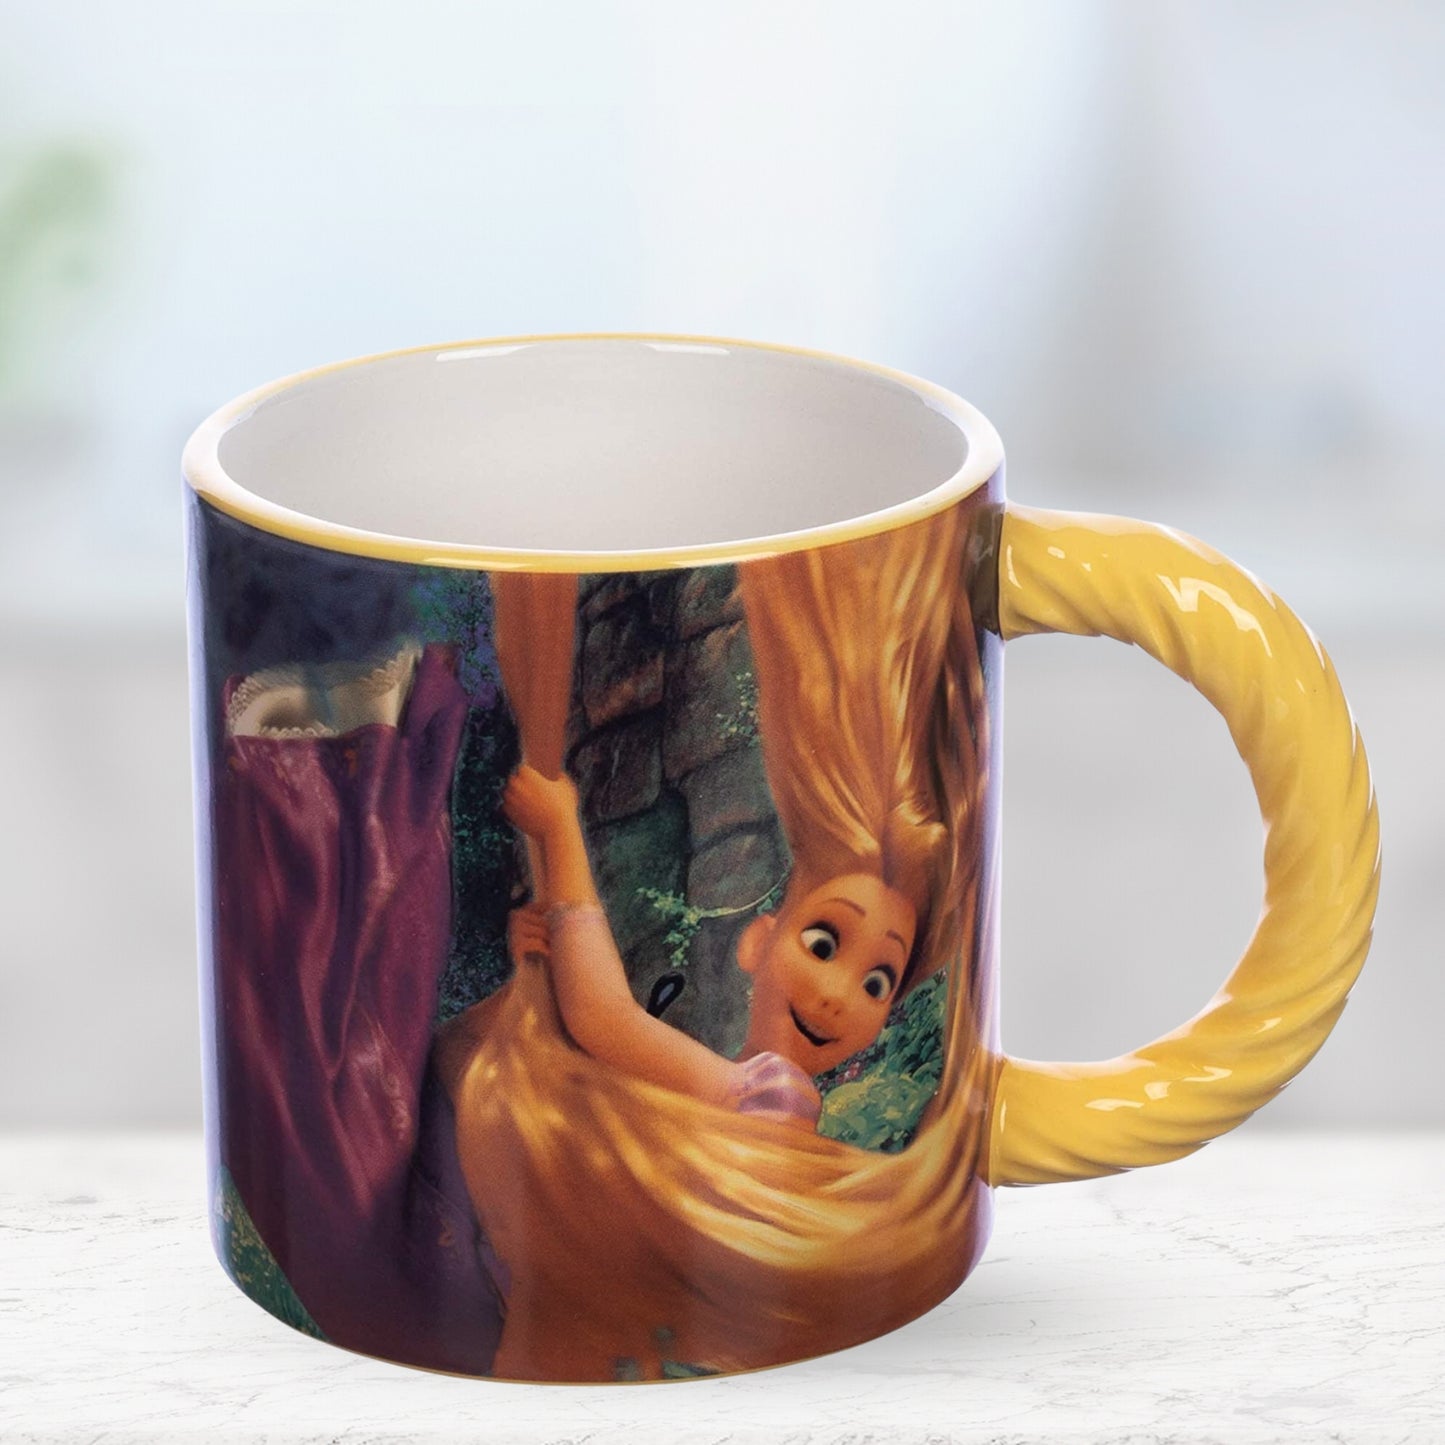 The Little Mermaid Ariel 20 oz. Sculpted Mug